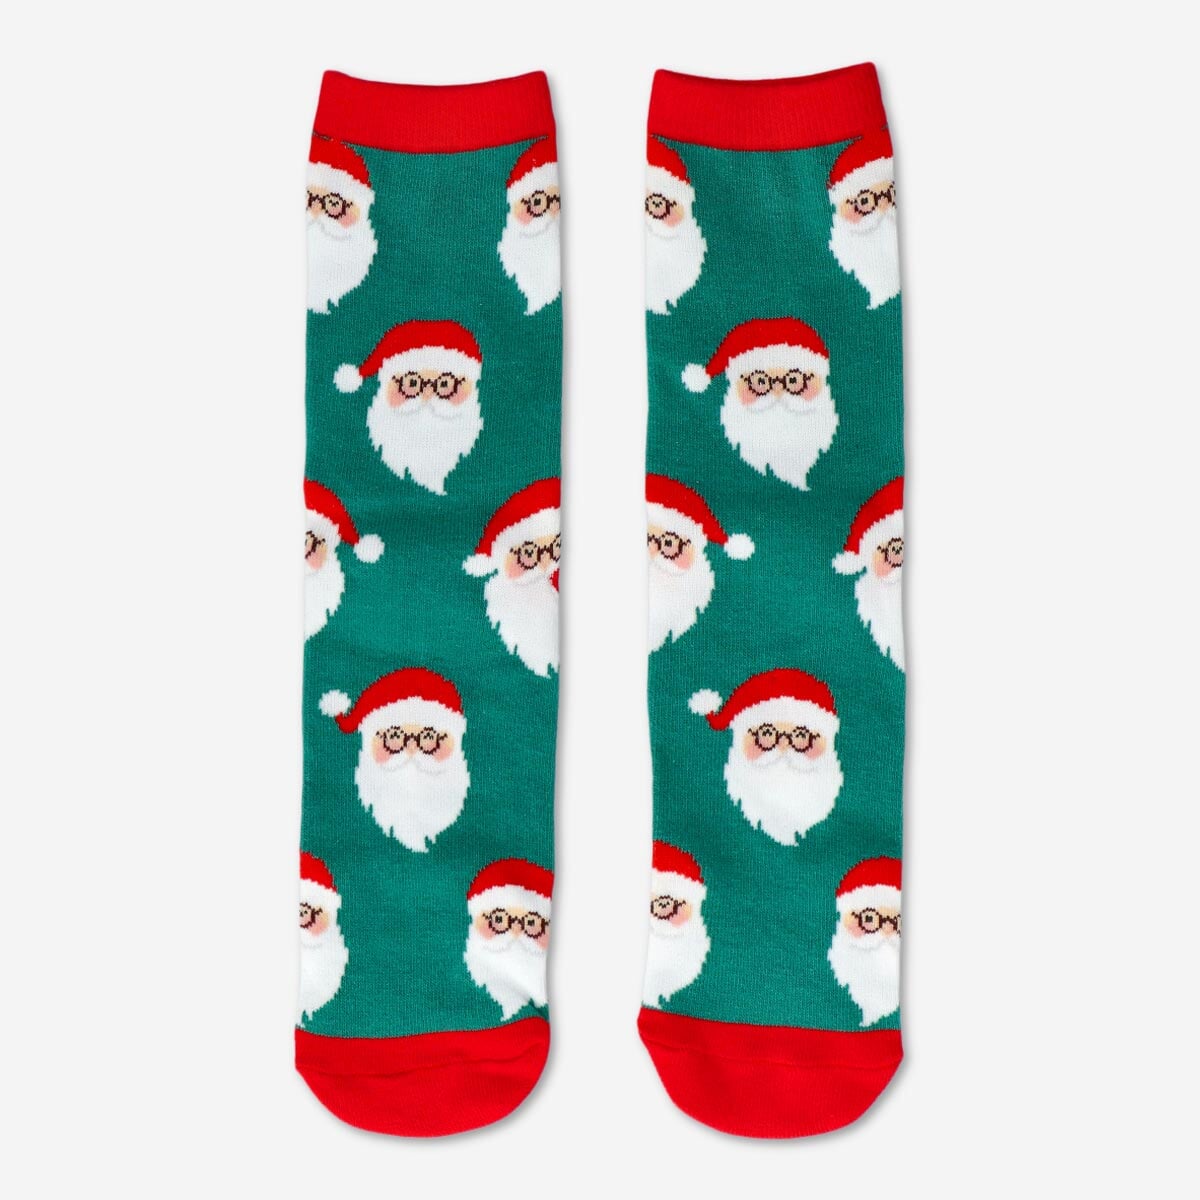 O seu melhor amigo de Natal: O entusiasta das meias